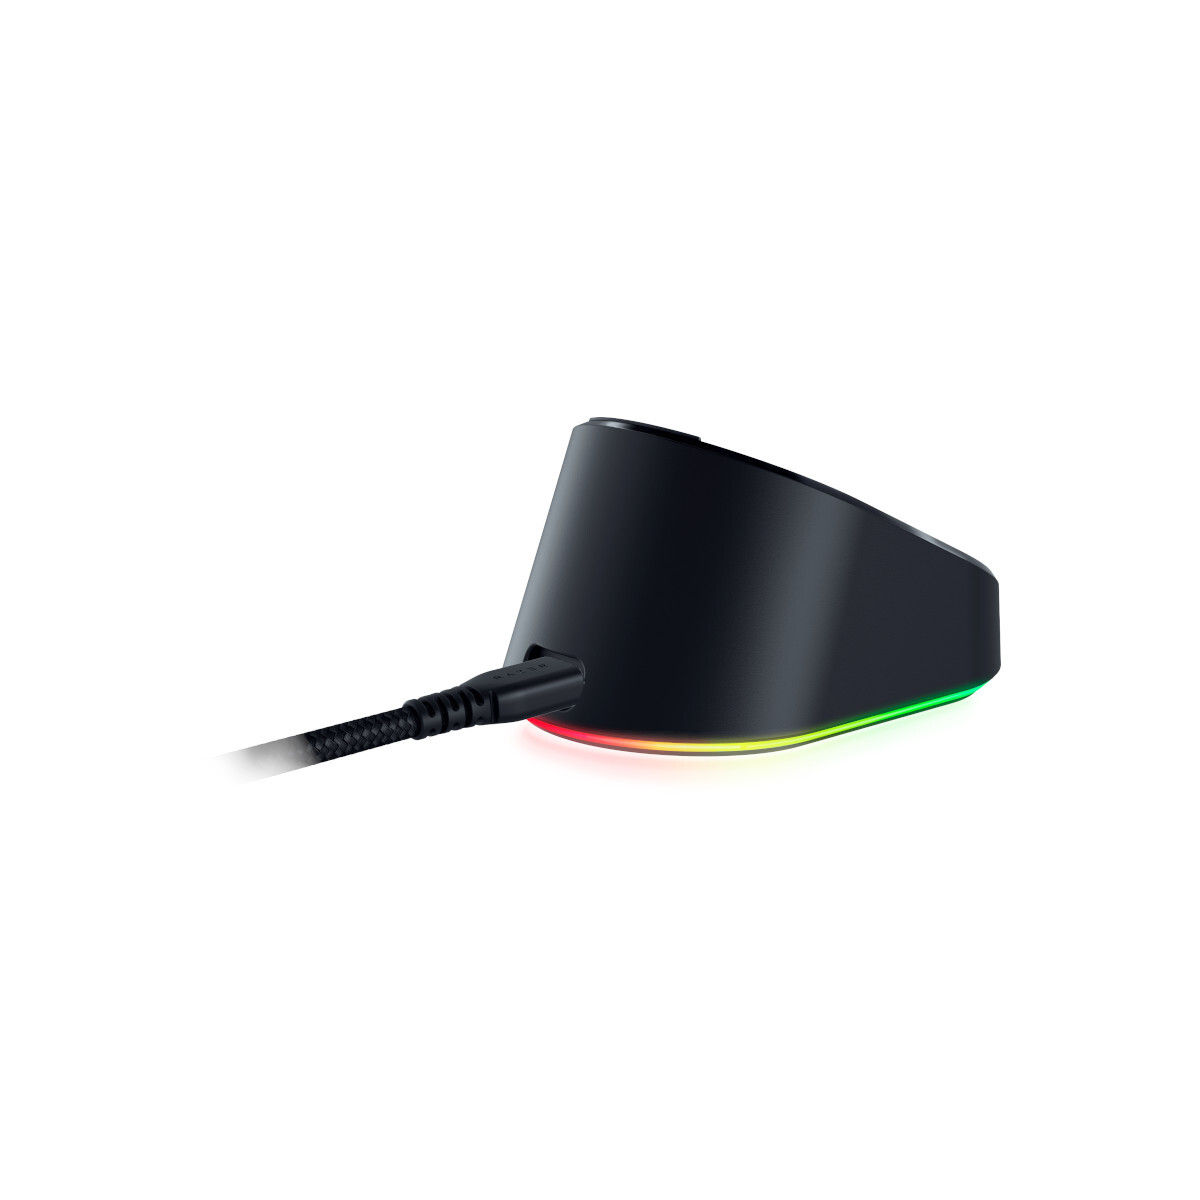 Razer Mouse Dock Pro + Wireless Charging Puck, Kabellose Maus- Ladestation, RGB-Beleuchtung von Razer